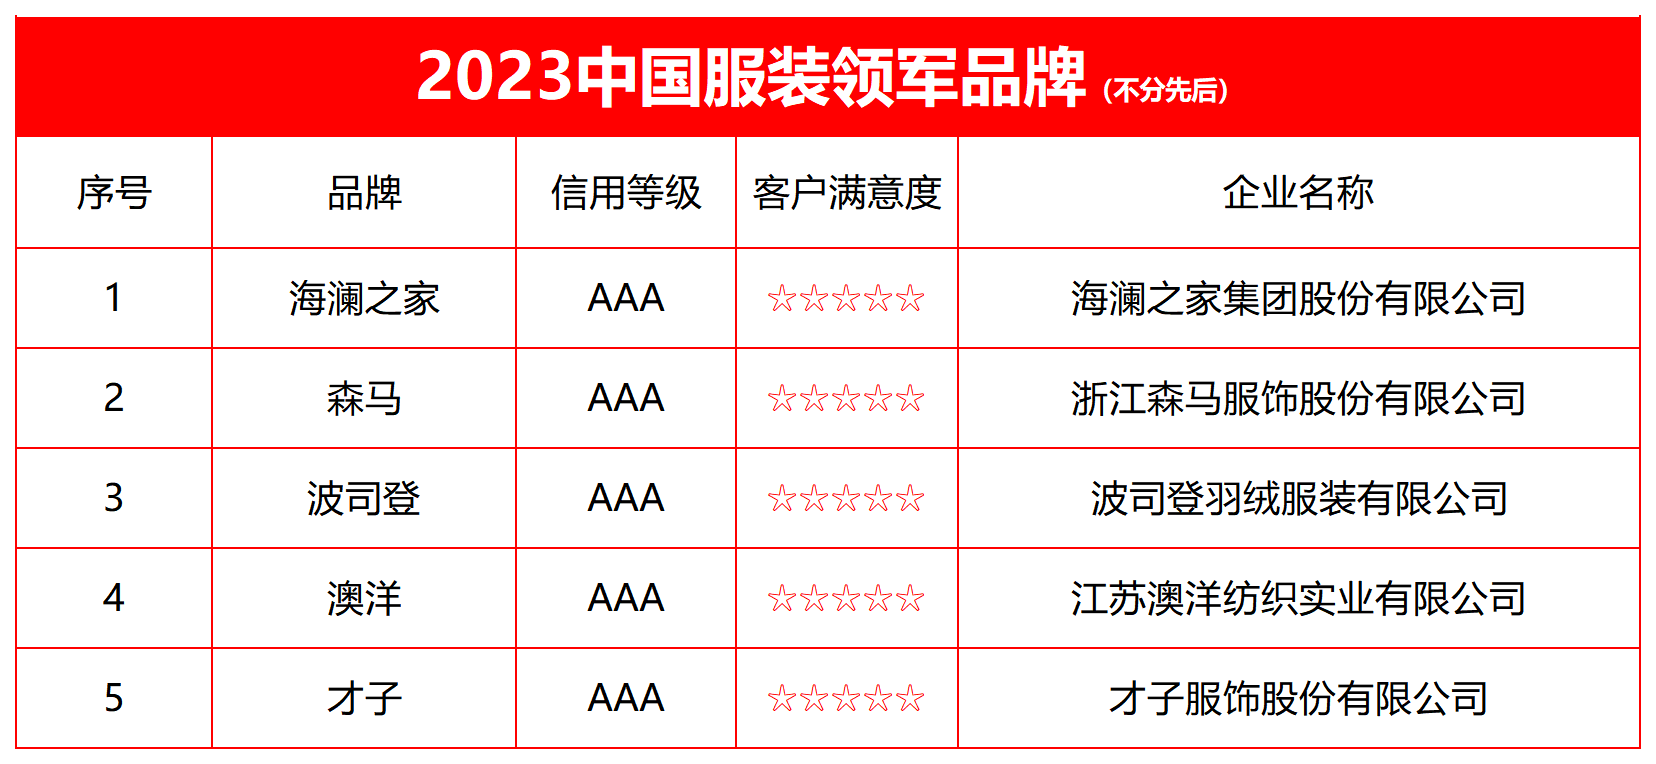 2023中国服装领军品牌榜单发布